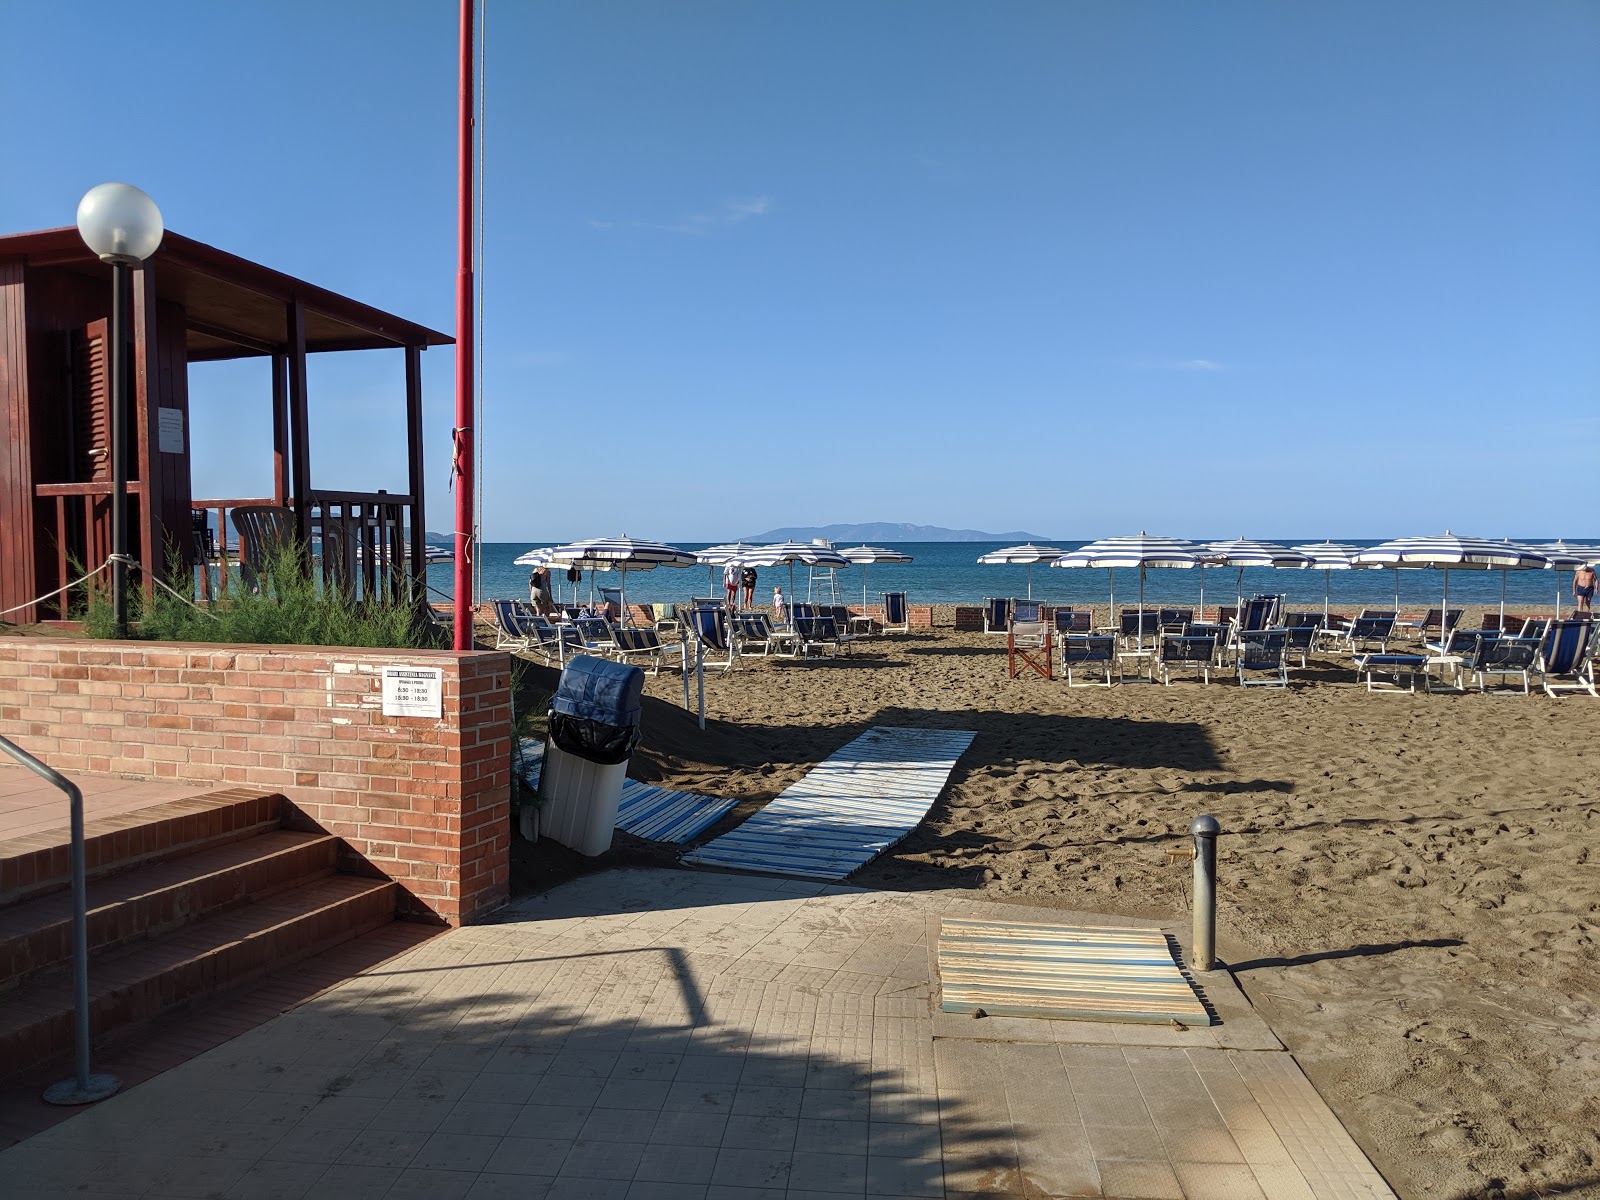 Foto af Spiaggia Dell'Osa - populært sted blandt afslapningskendere